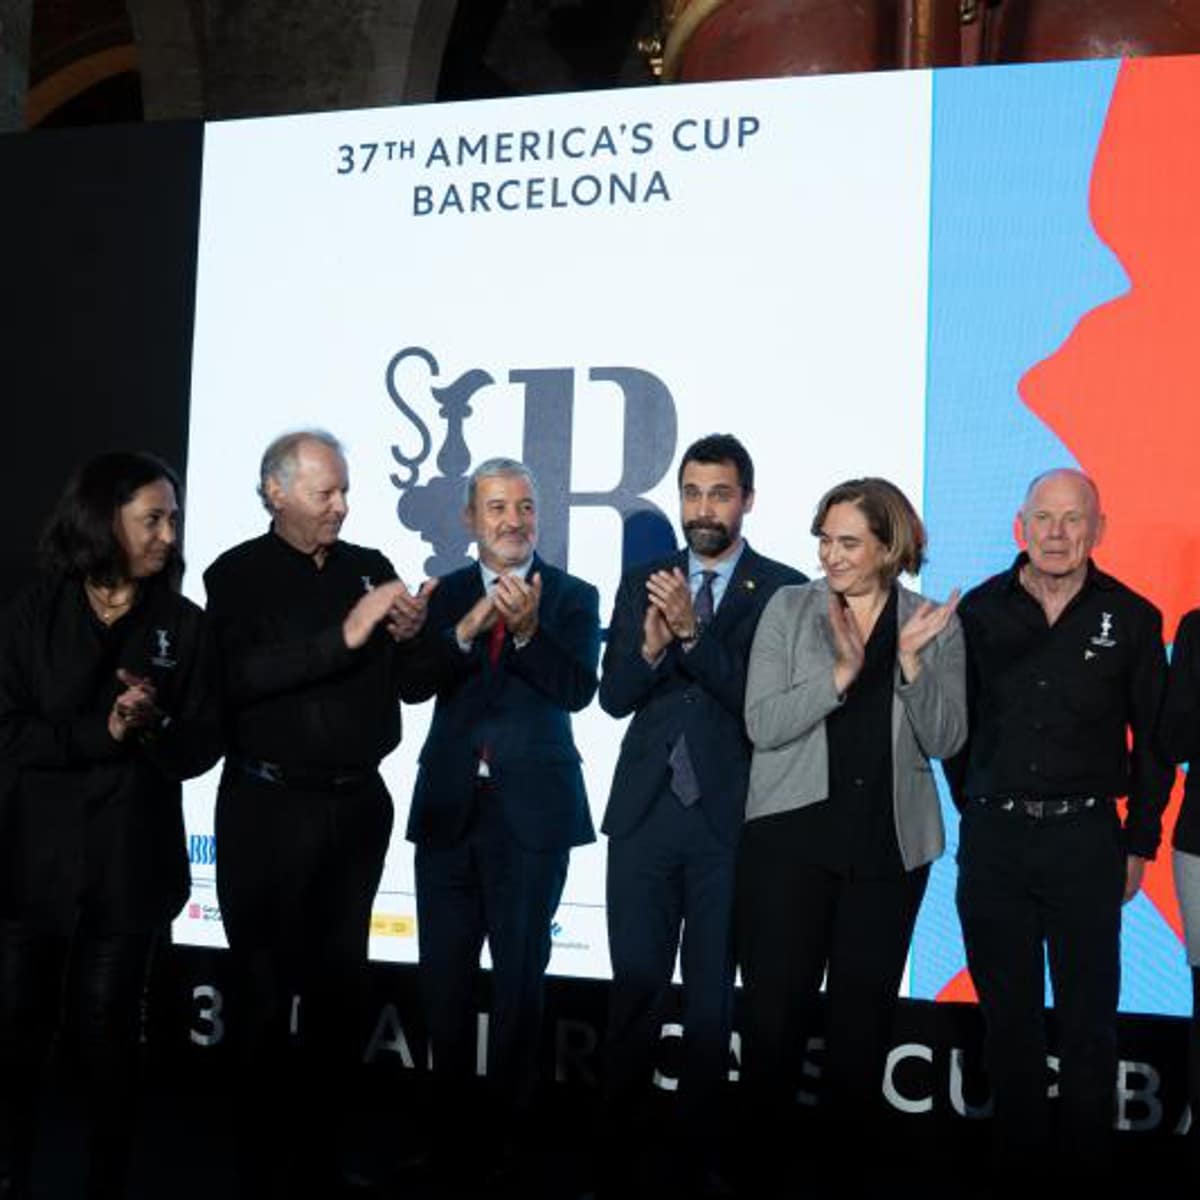 La Copa América de Barcelona será la mejor edición de la historia, según la organización